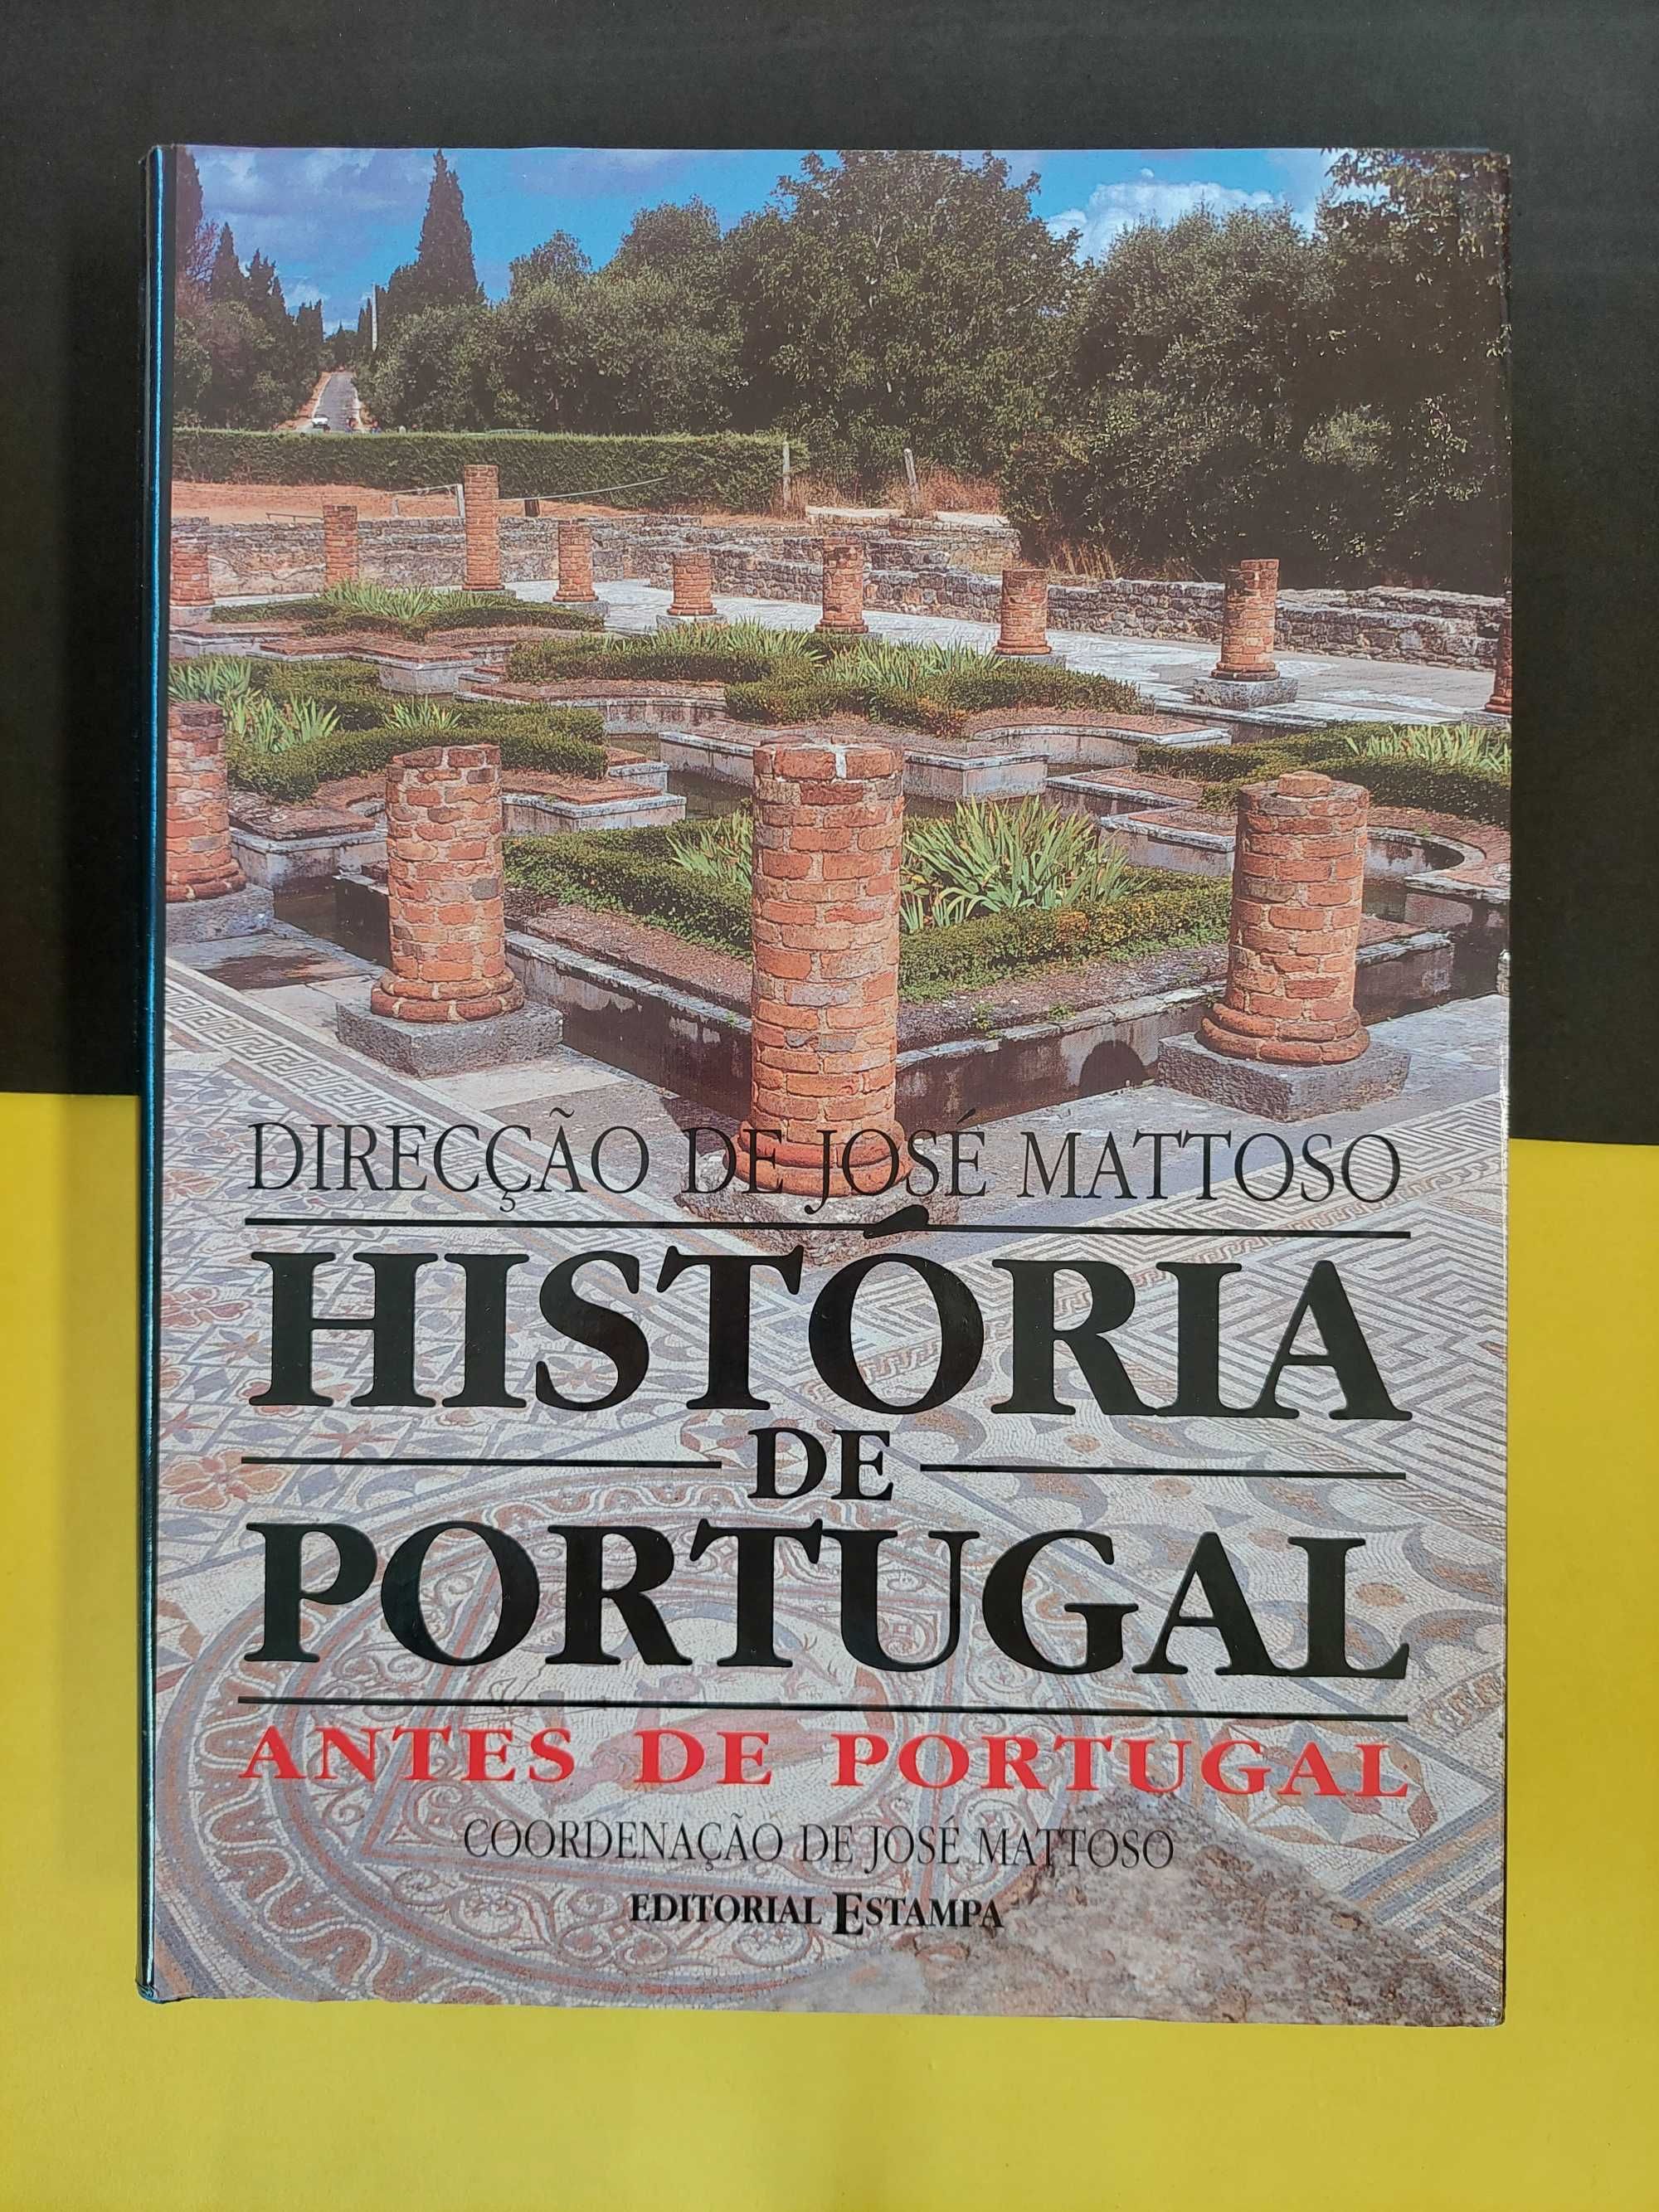 José Mattoso - História de Portugal antes de Portugal, vol 1